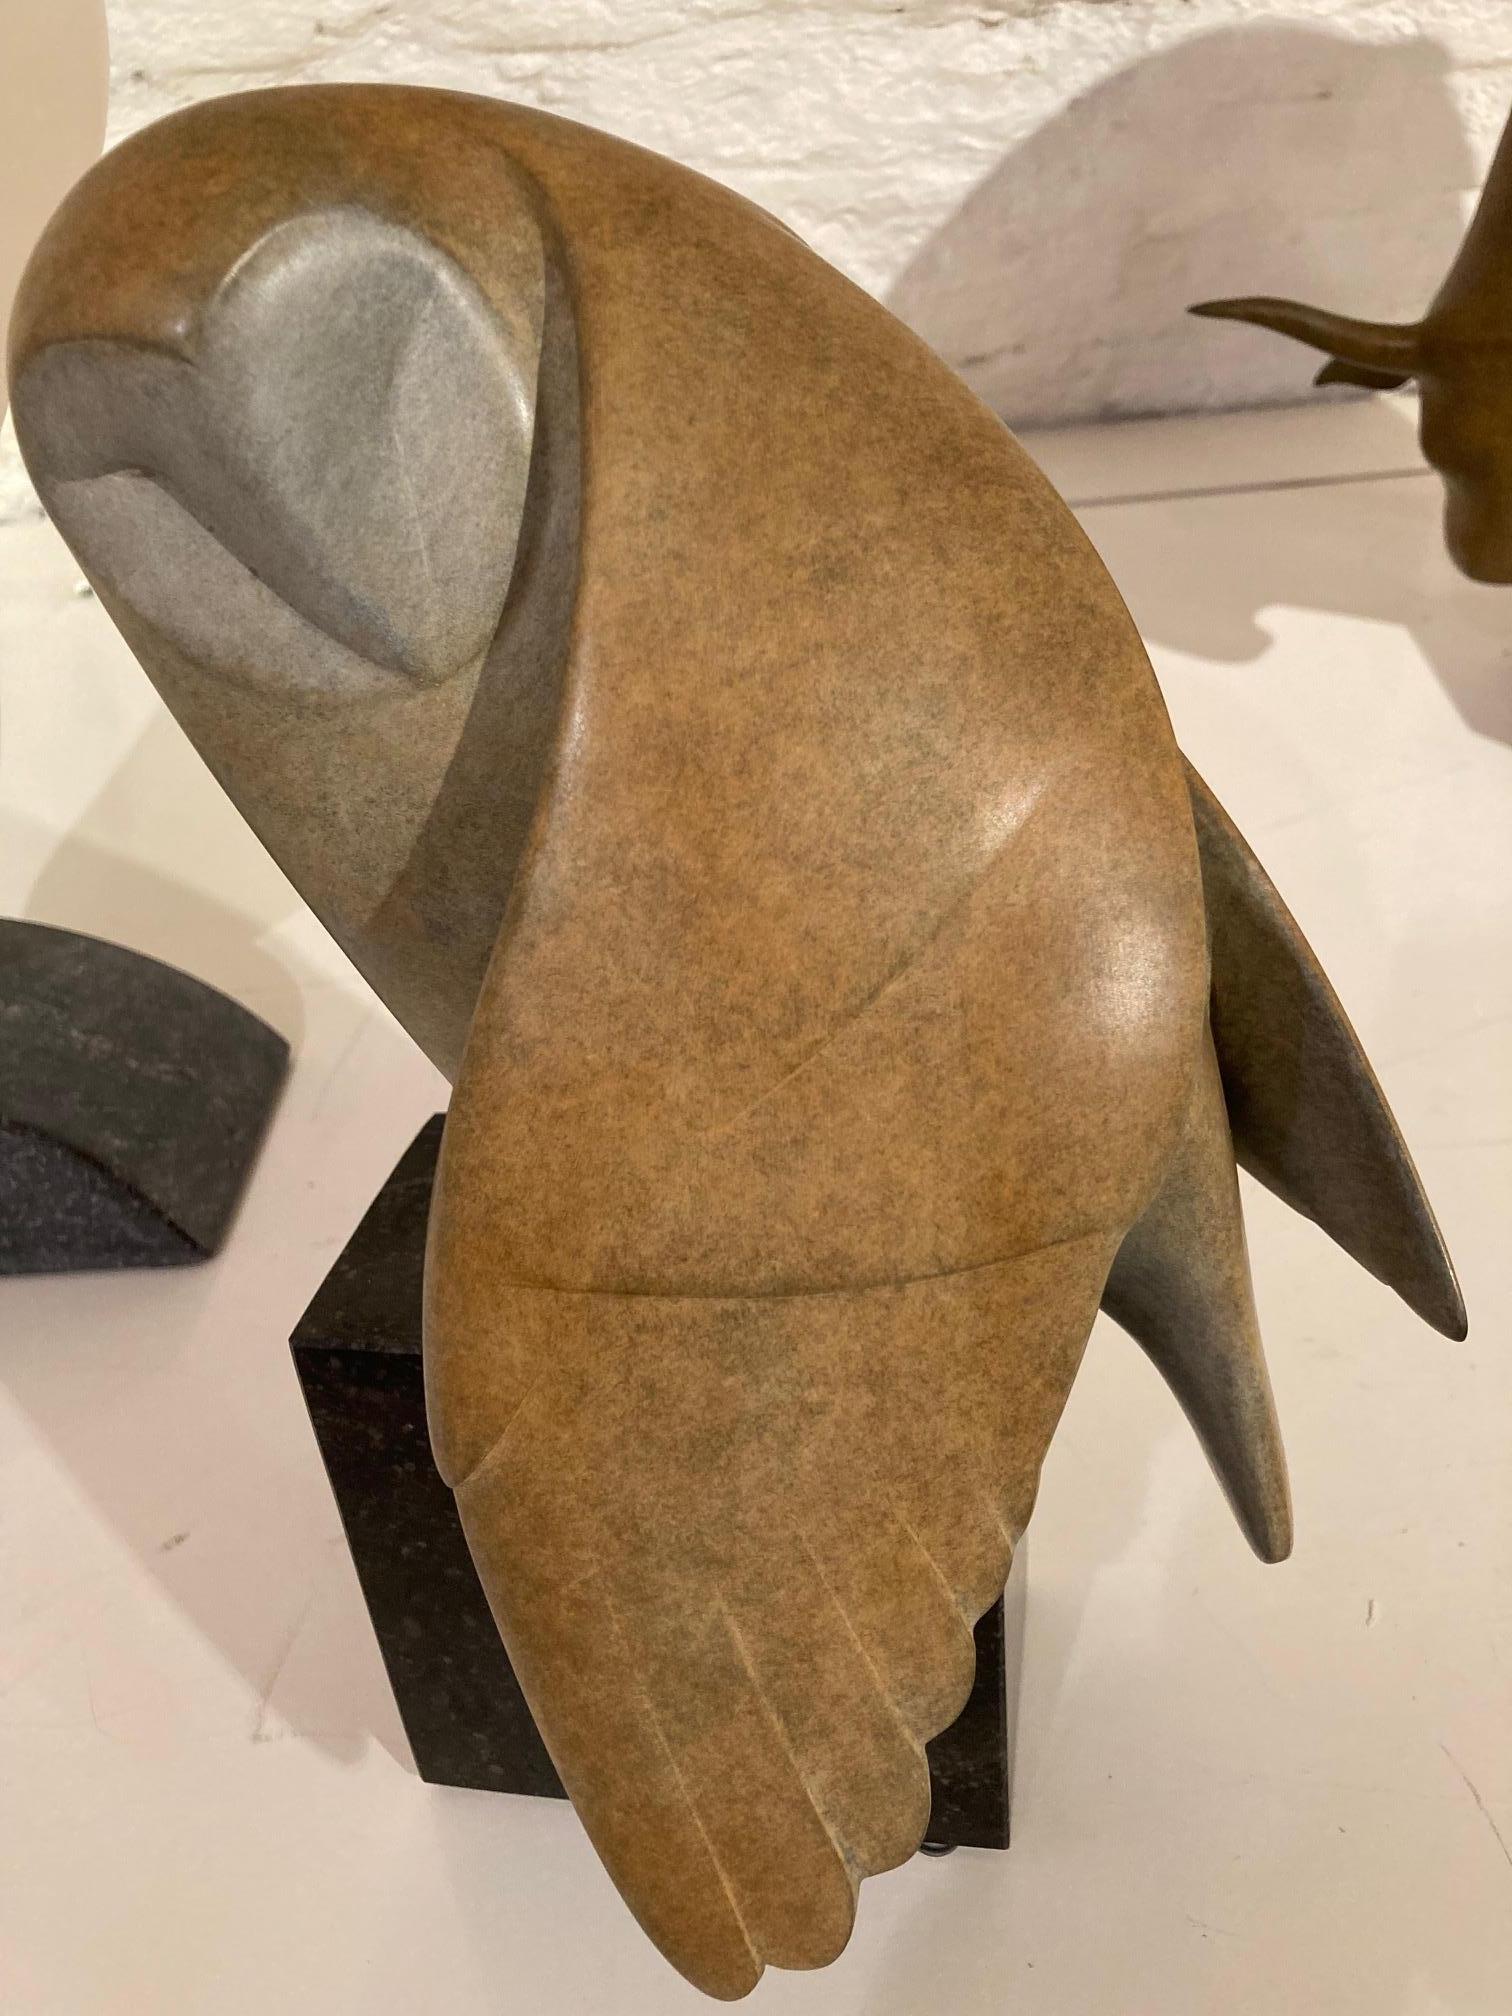 Opkijkende Uil no. 1  (Hibou regardant vers le haut) Sculpture en bronze Oiseau Contemporain
Délai de livraison de 3 mois.

Evert den Hartog (né à Groot-Ammers, aux Pays-Bas, en 1949) a suivi une formation de sculpteur à l'Académie des arts visuels